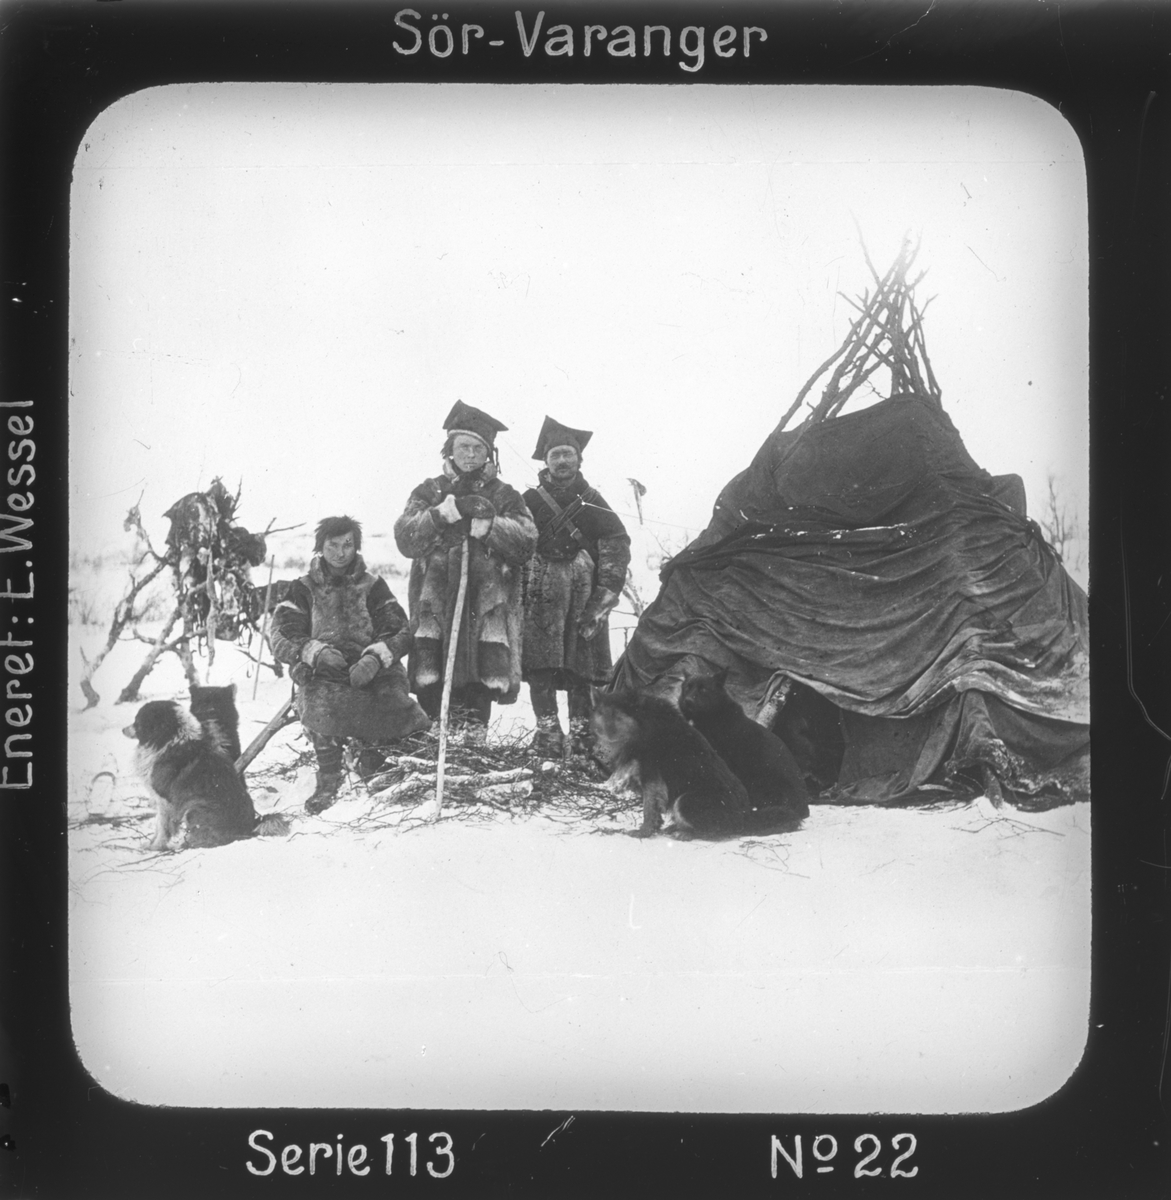 Fjellsametelt på Sør-Varangervidda, Finnmark.
Motivet har nr. 22 i lysbildeforedraget kalt  "I lappernes land - Sør-Varanger", utgitt i Nerliens Lysbilledserier, serie nr 113. 